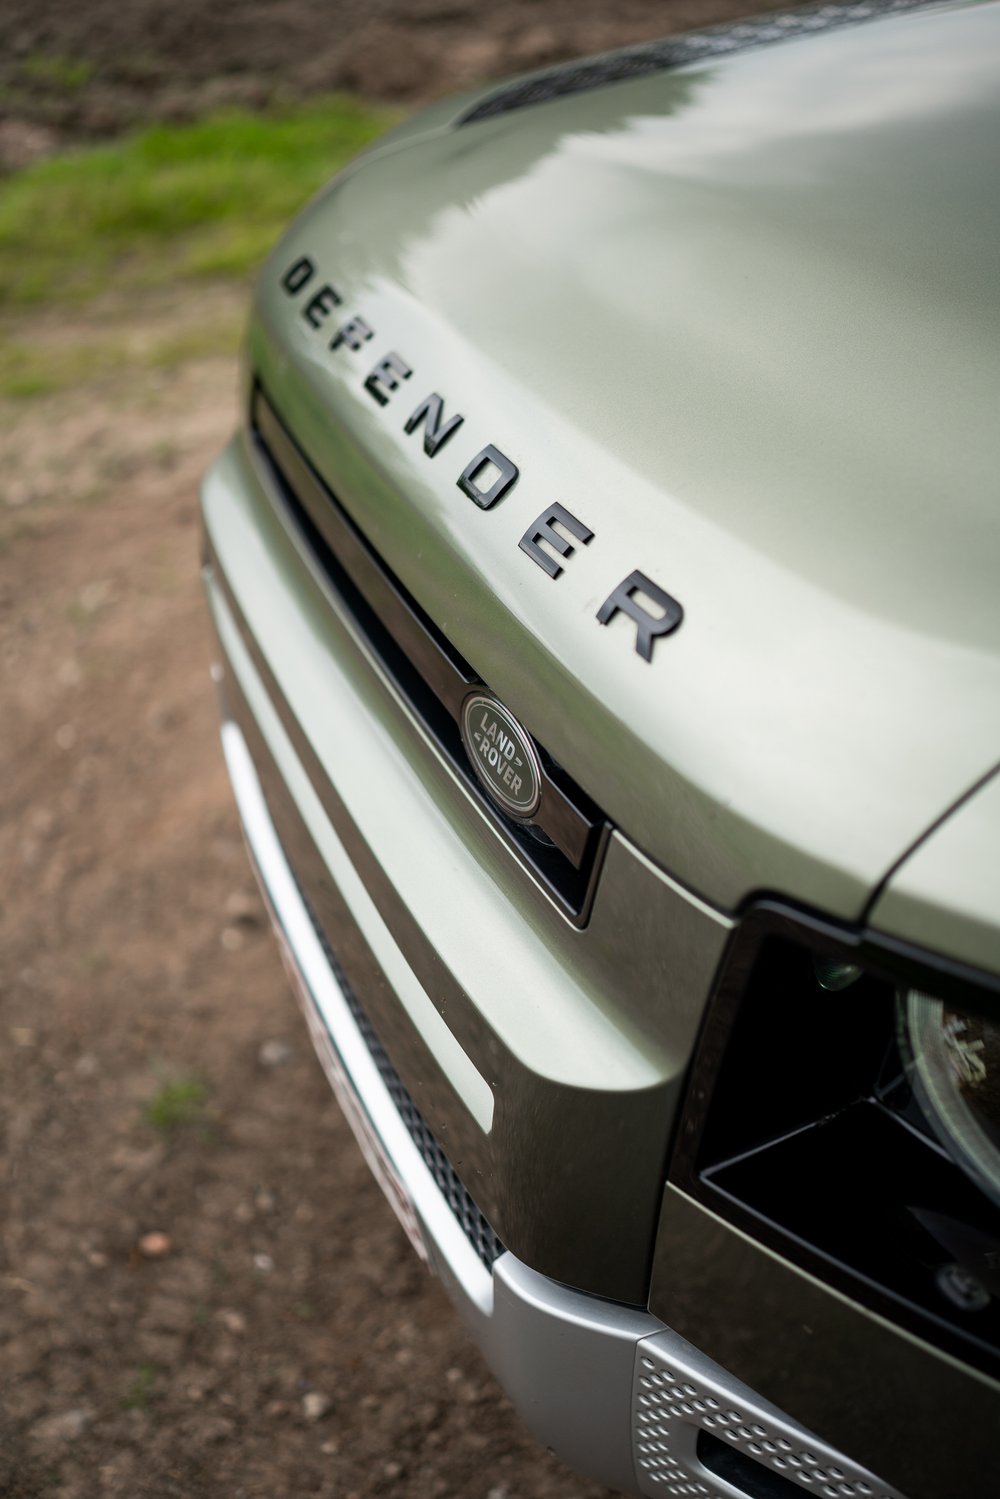 Land Rover Defender logo